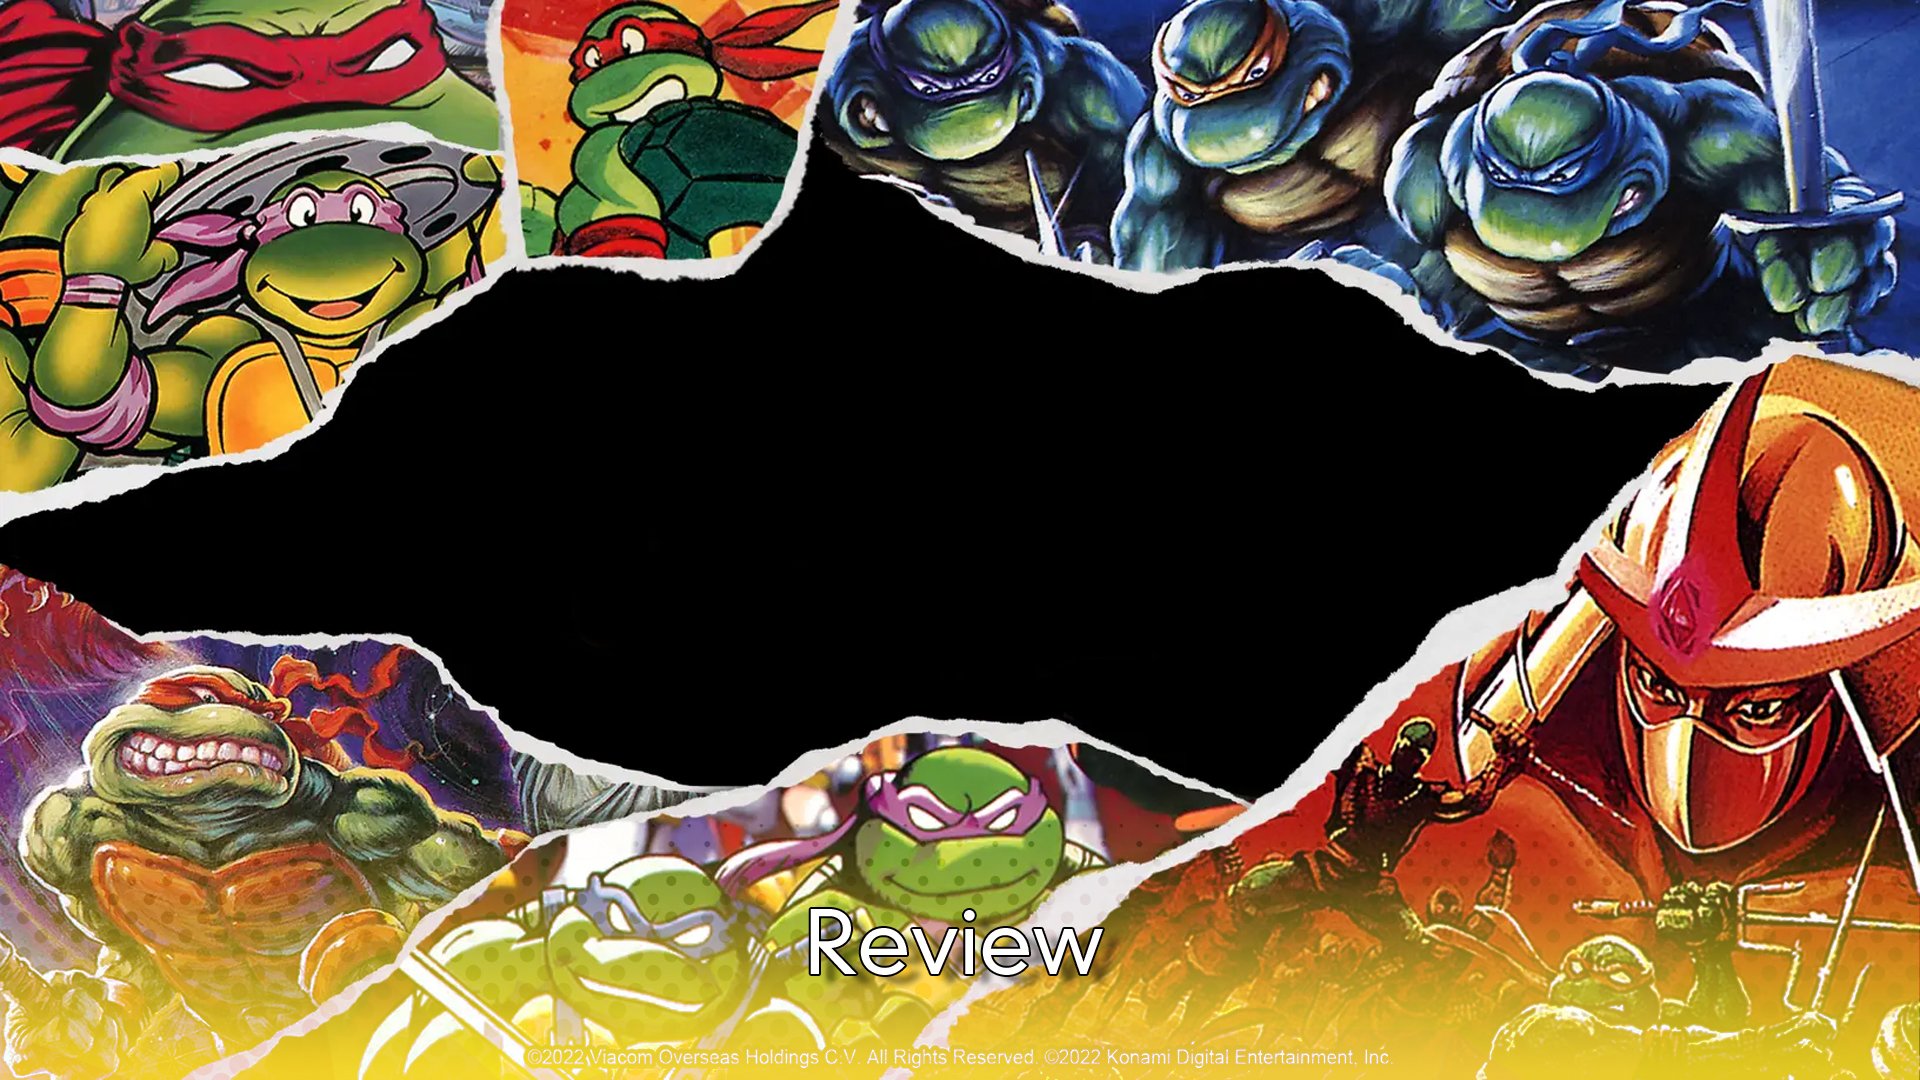 Teenage Mutant Ninja Turtles Cowabunga Covers – KUNUFLEX Short